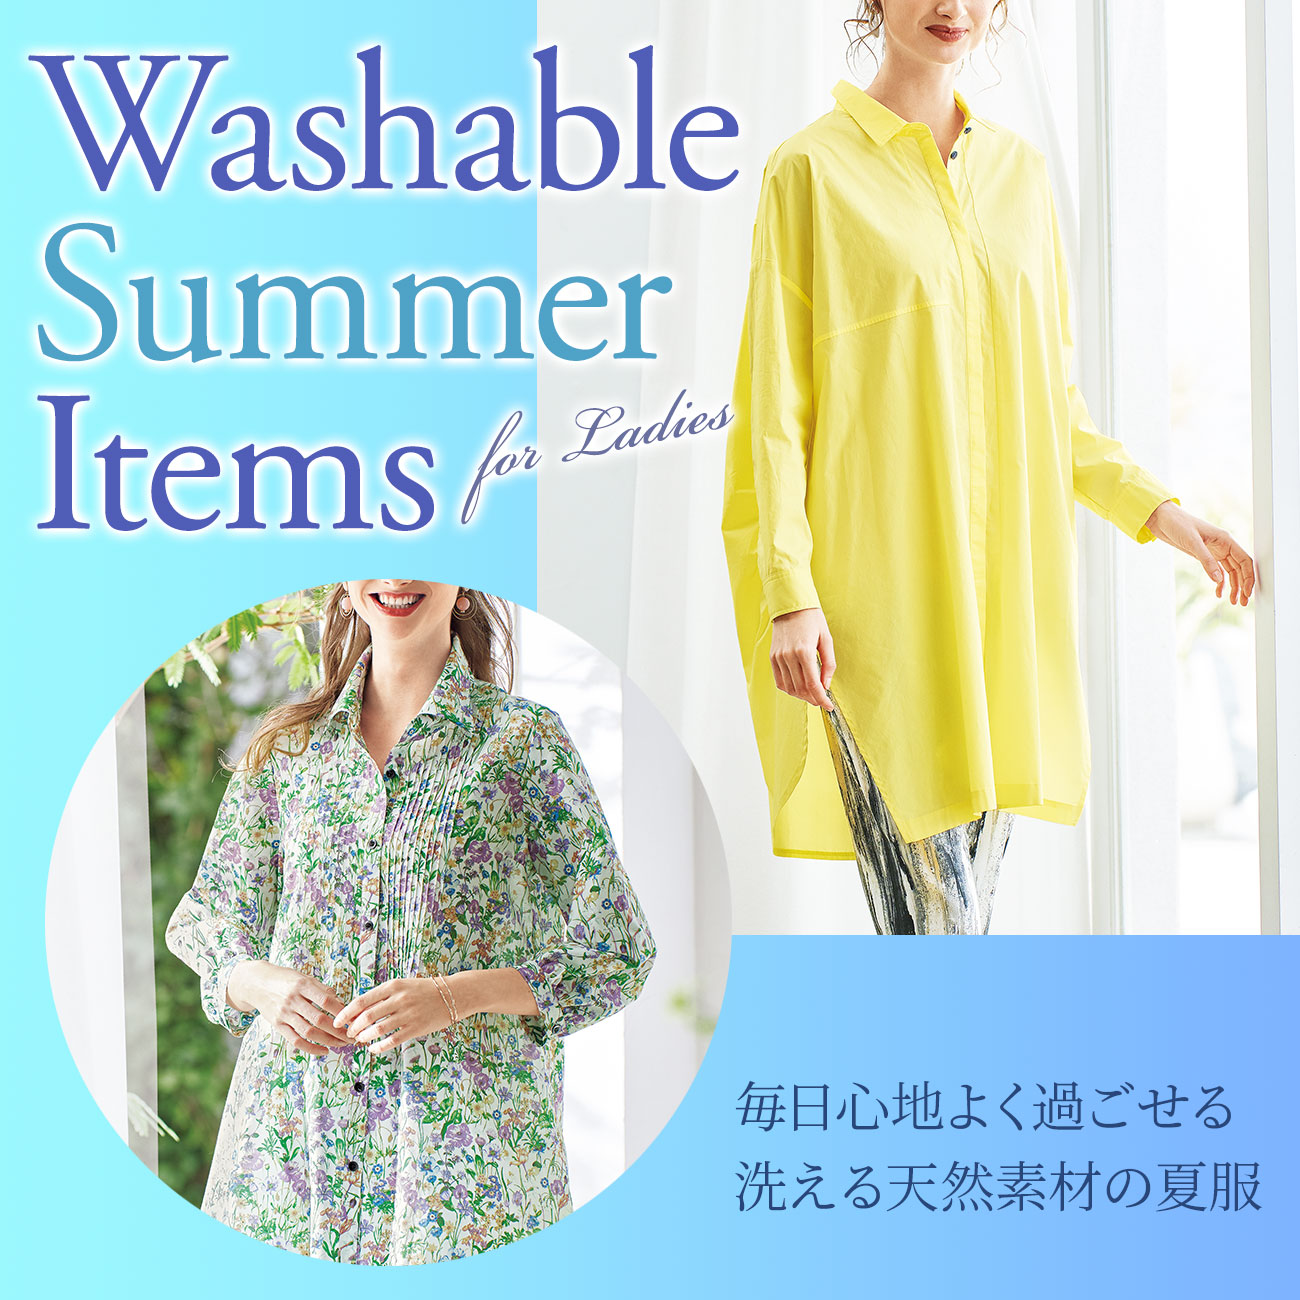 【特集】洗える天然素材の夏服 for Ladies 